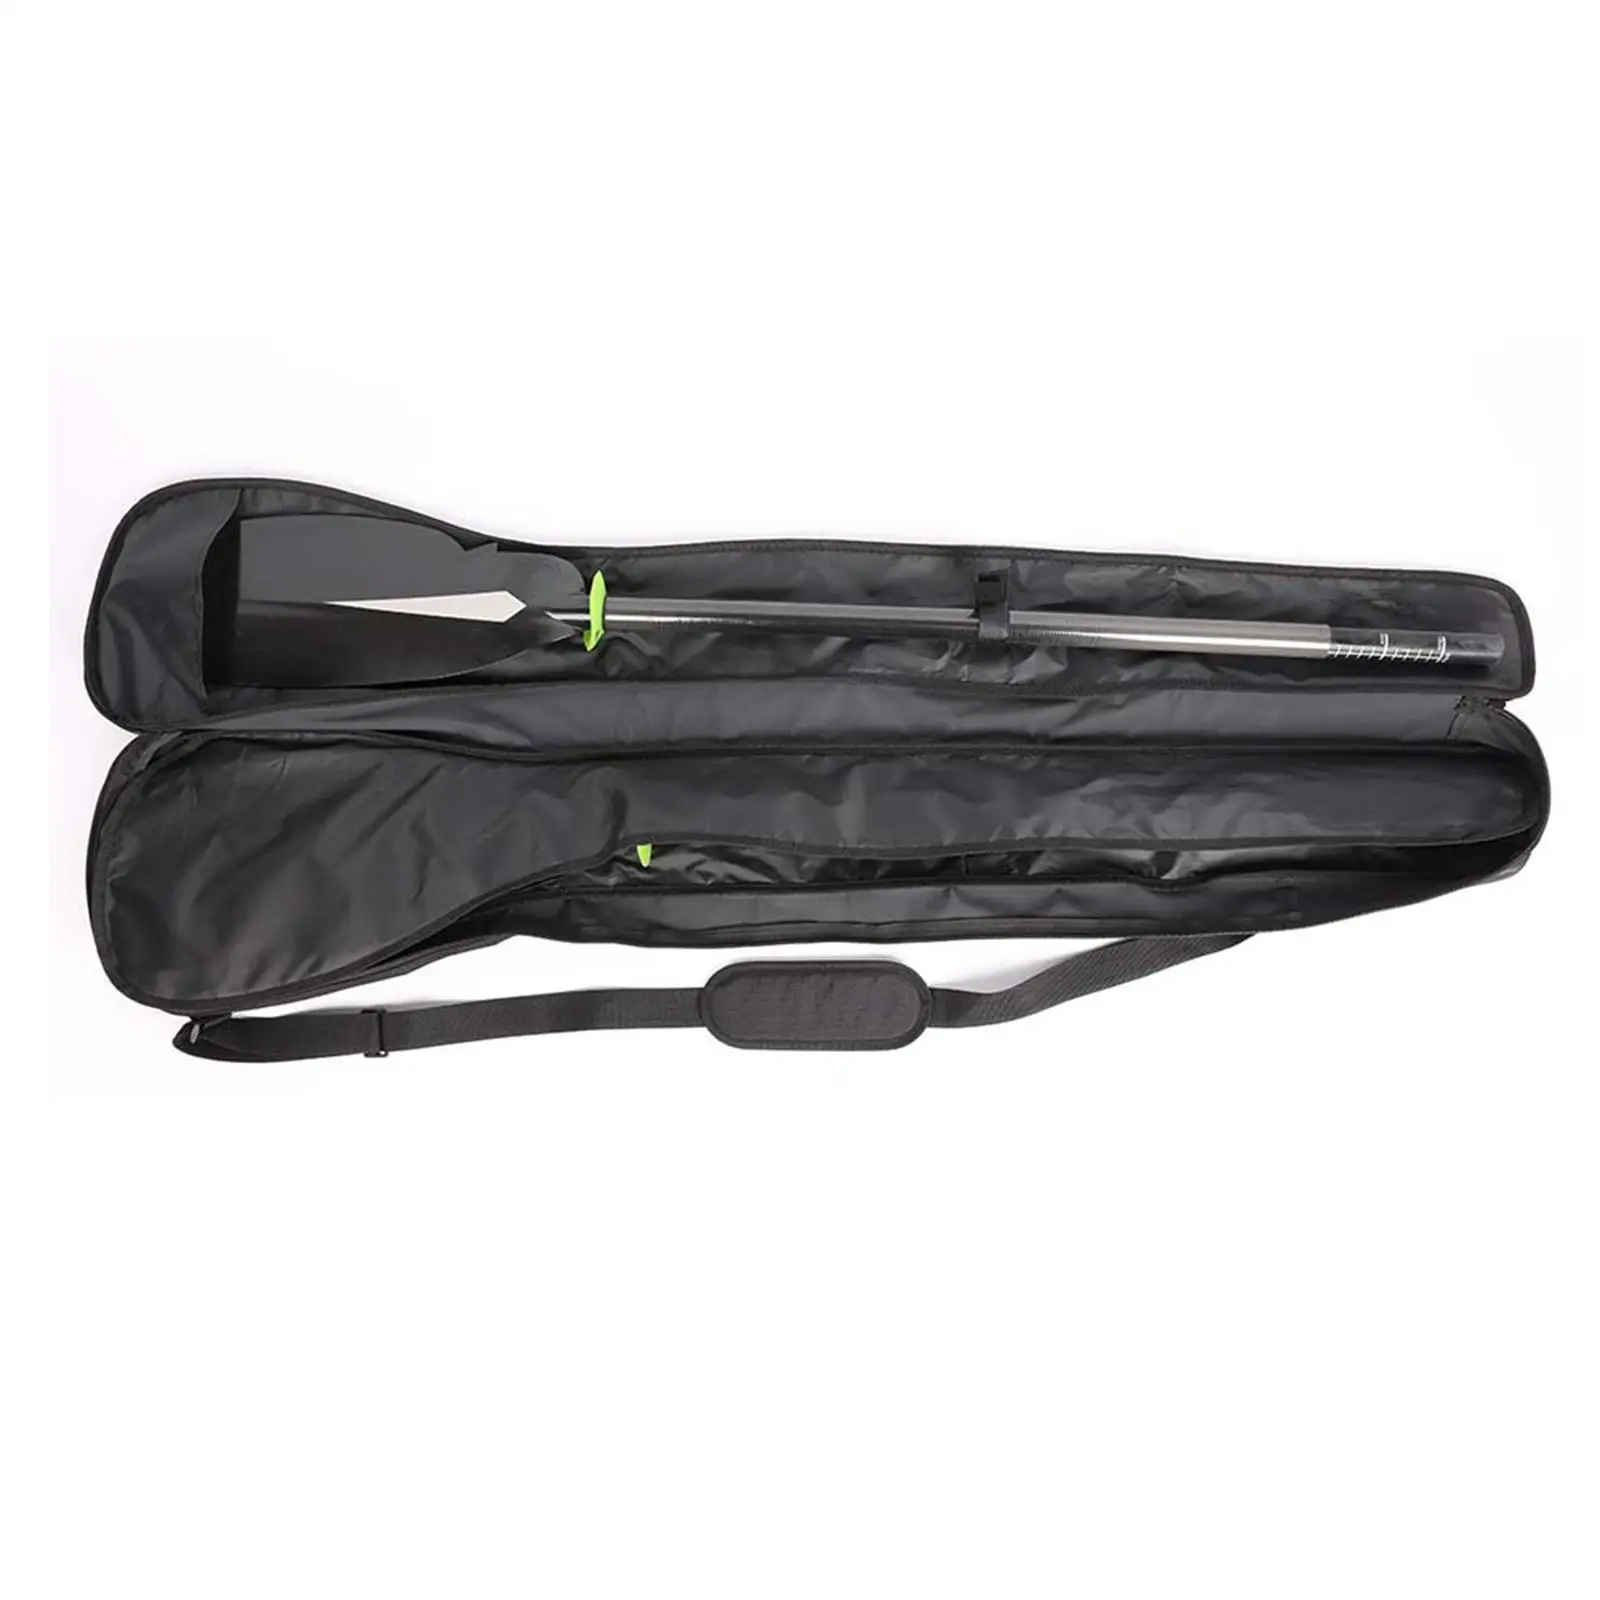 Portable Boat Paddle Bag Holder Protective with Shoulder Strap Case Split Paddle